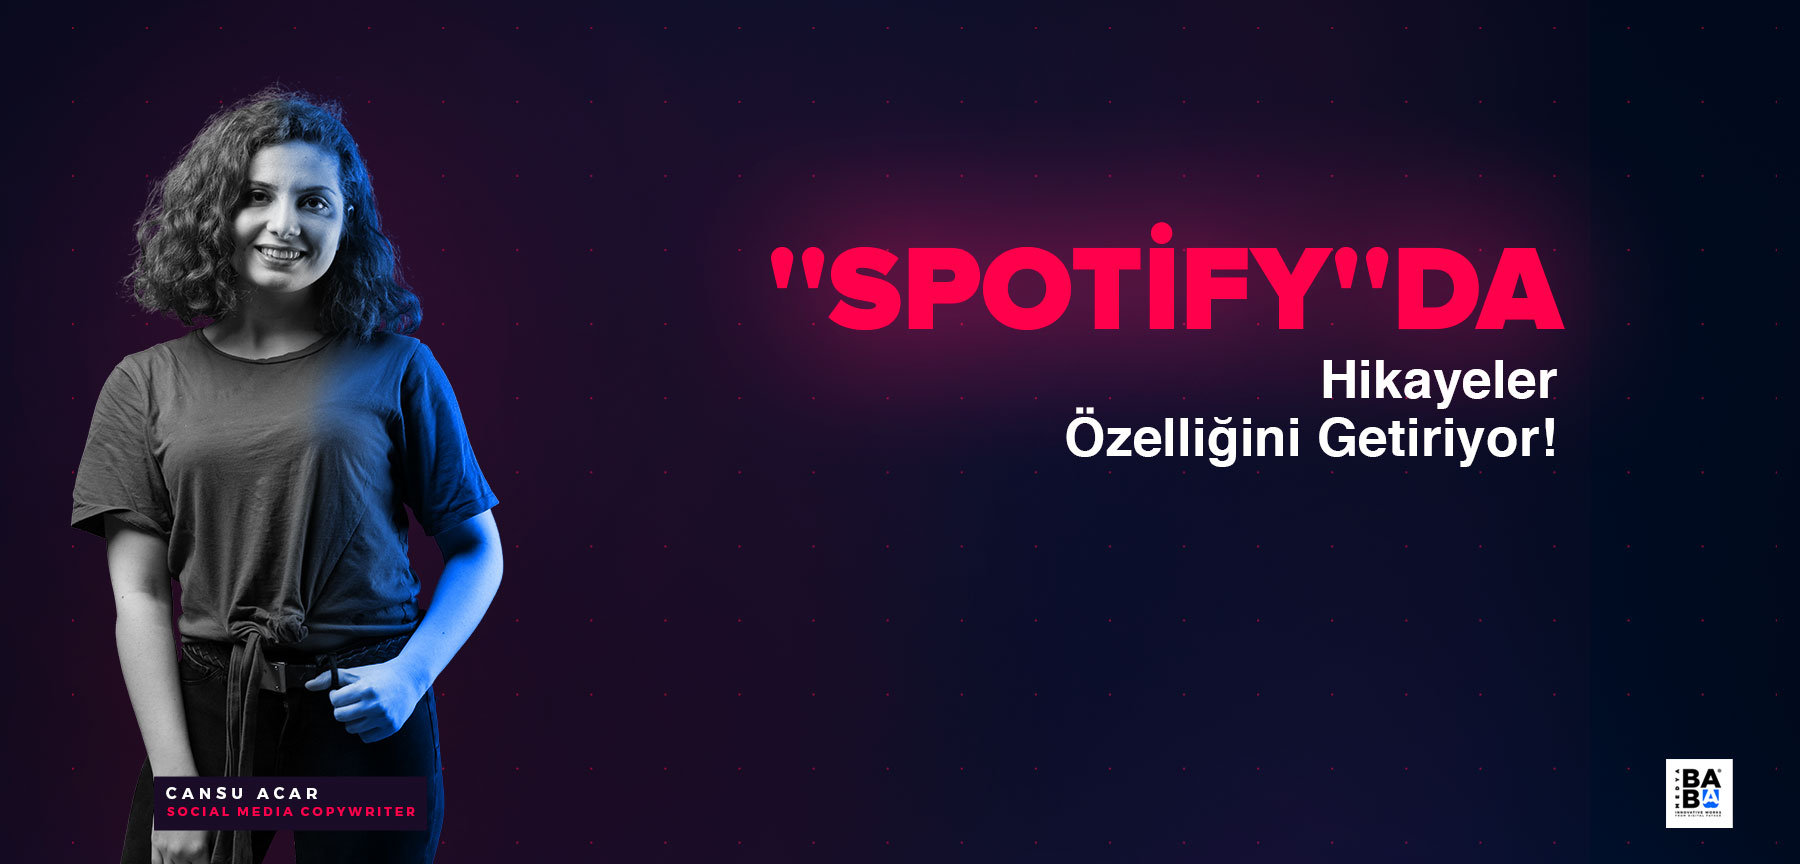 ''SPOTİFY''DA HİKAYELER ÖZELLİĞİNİ GETİRİYOR!